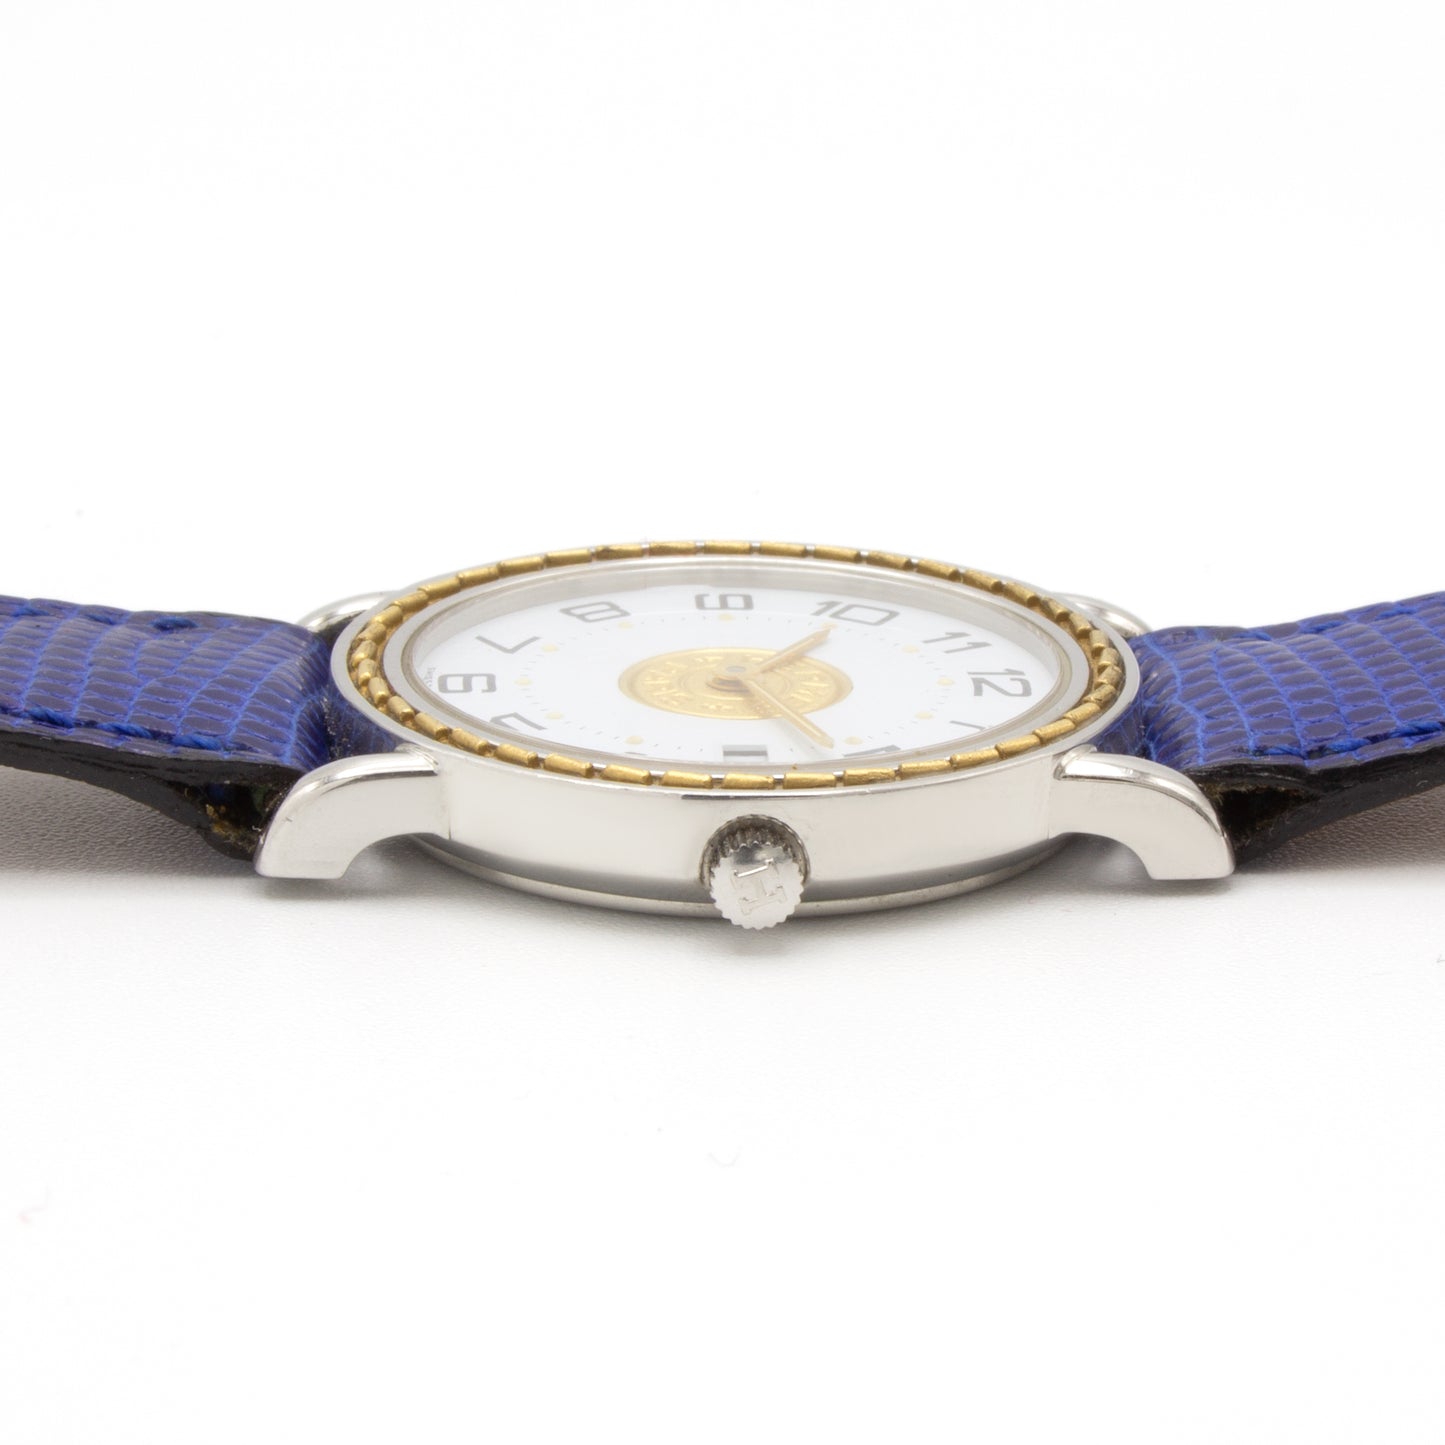 Hermes Sellier watch